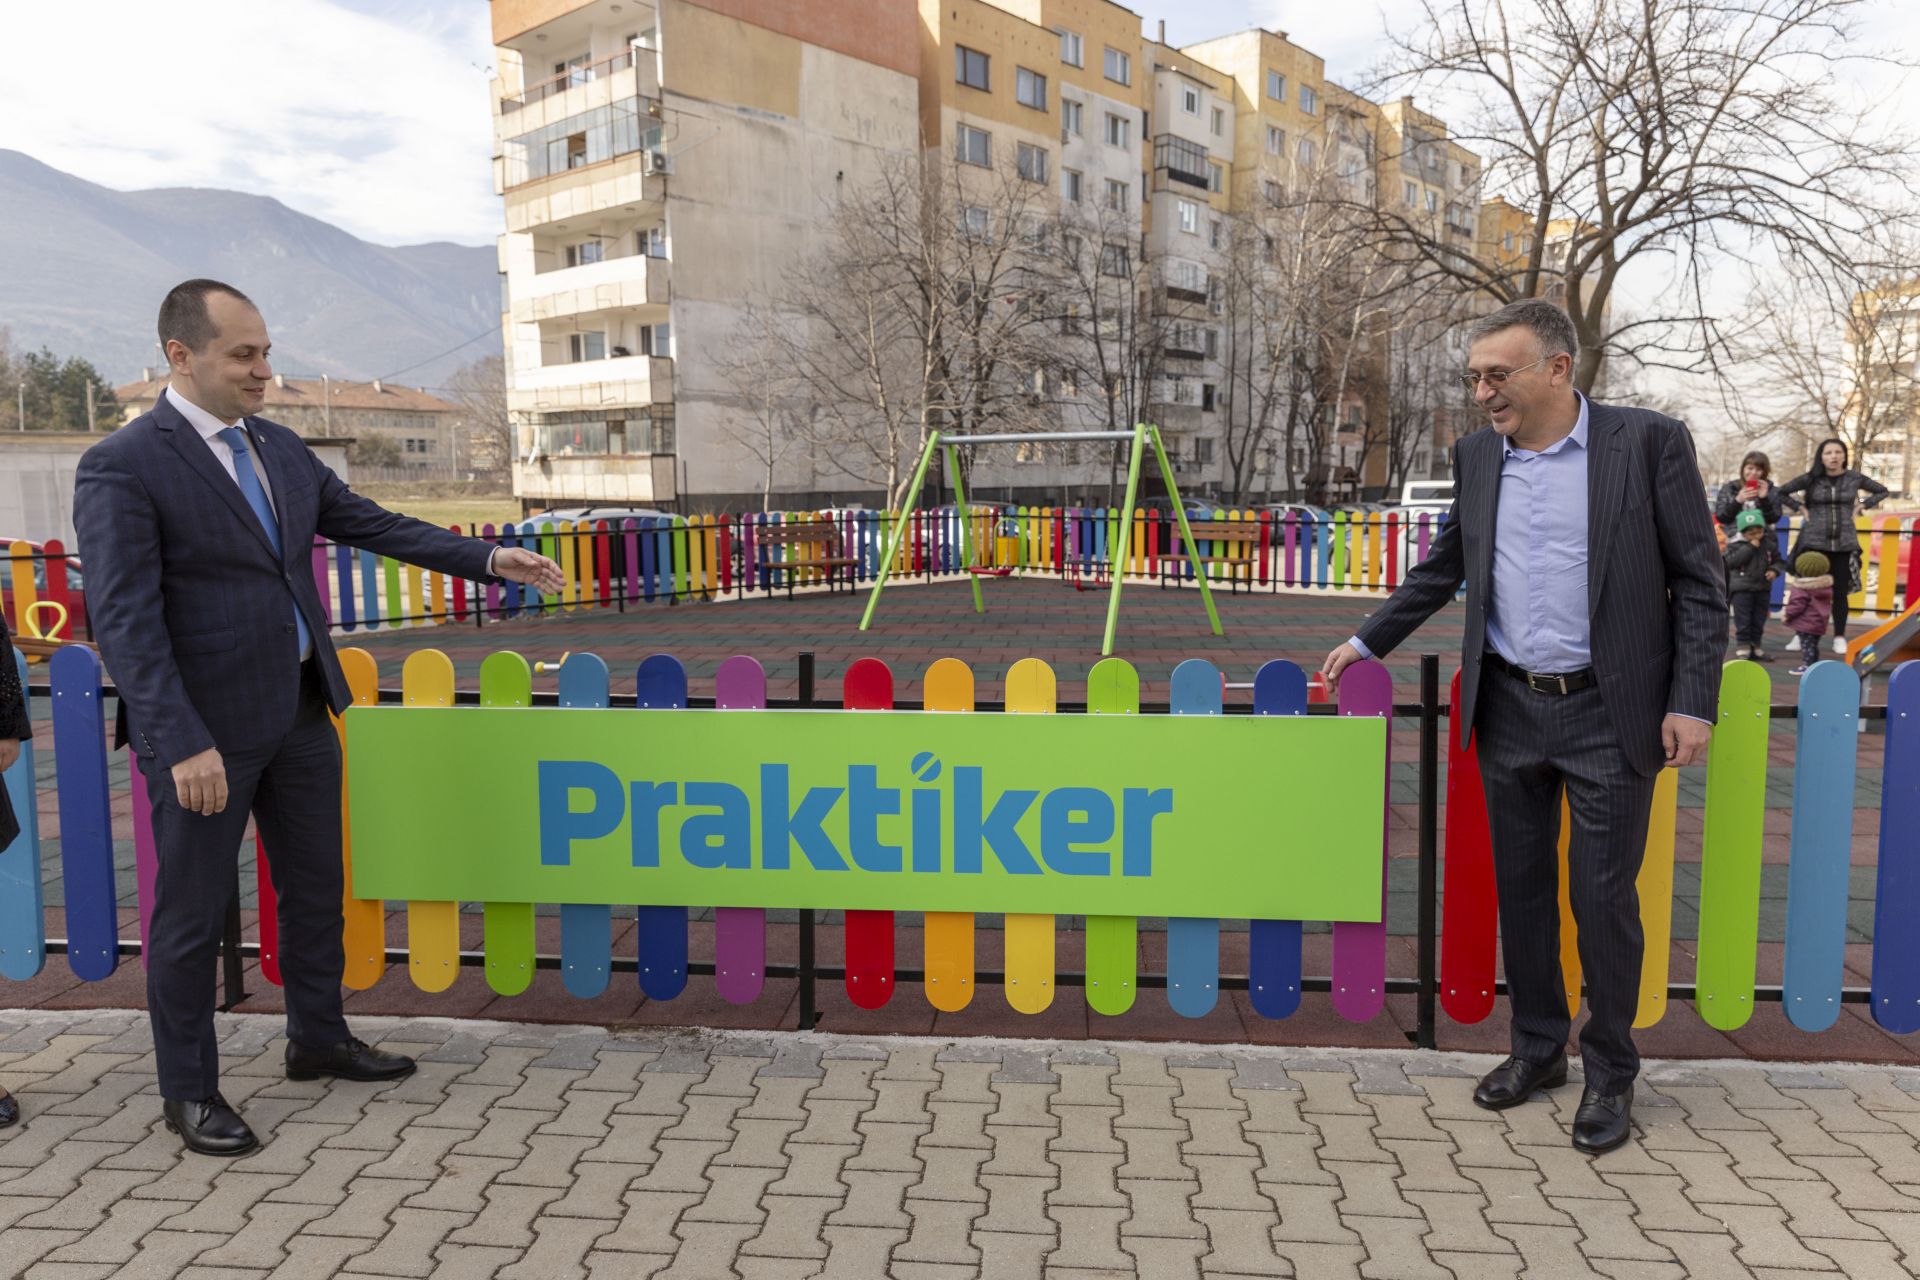  Г-н Калин Каменов и г-н Тодор Белчев откриват нова детска площадка във Враца - подарък от Практикер за жителите на града.